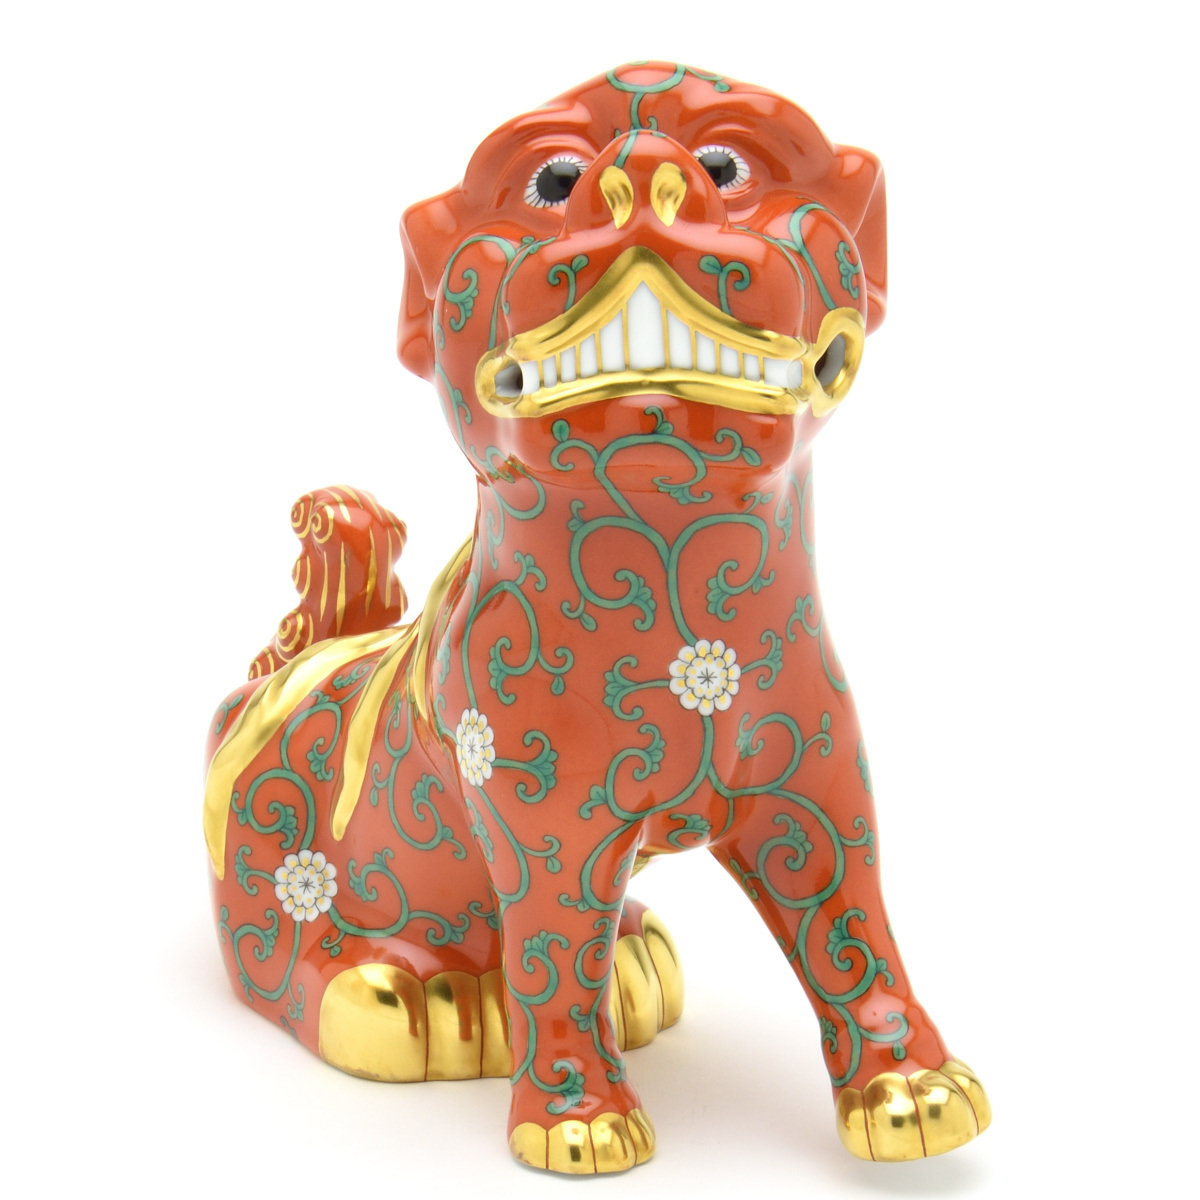 ヘレンド(Herend) こま犬(左足上げ) 西安の赤 こまいぬ 狛犬 手描き フィギュリン 置物 飾り物 ハンガリー製 新品